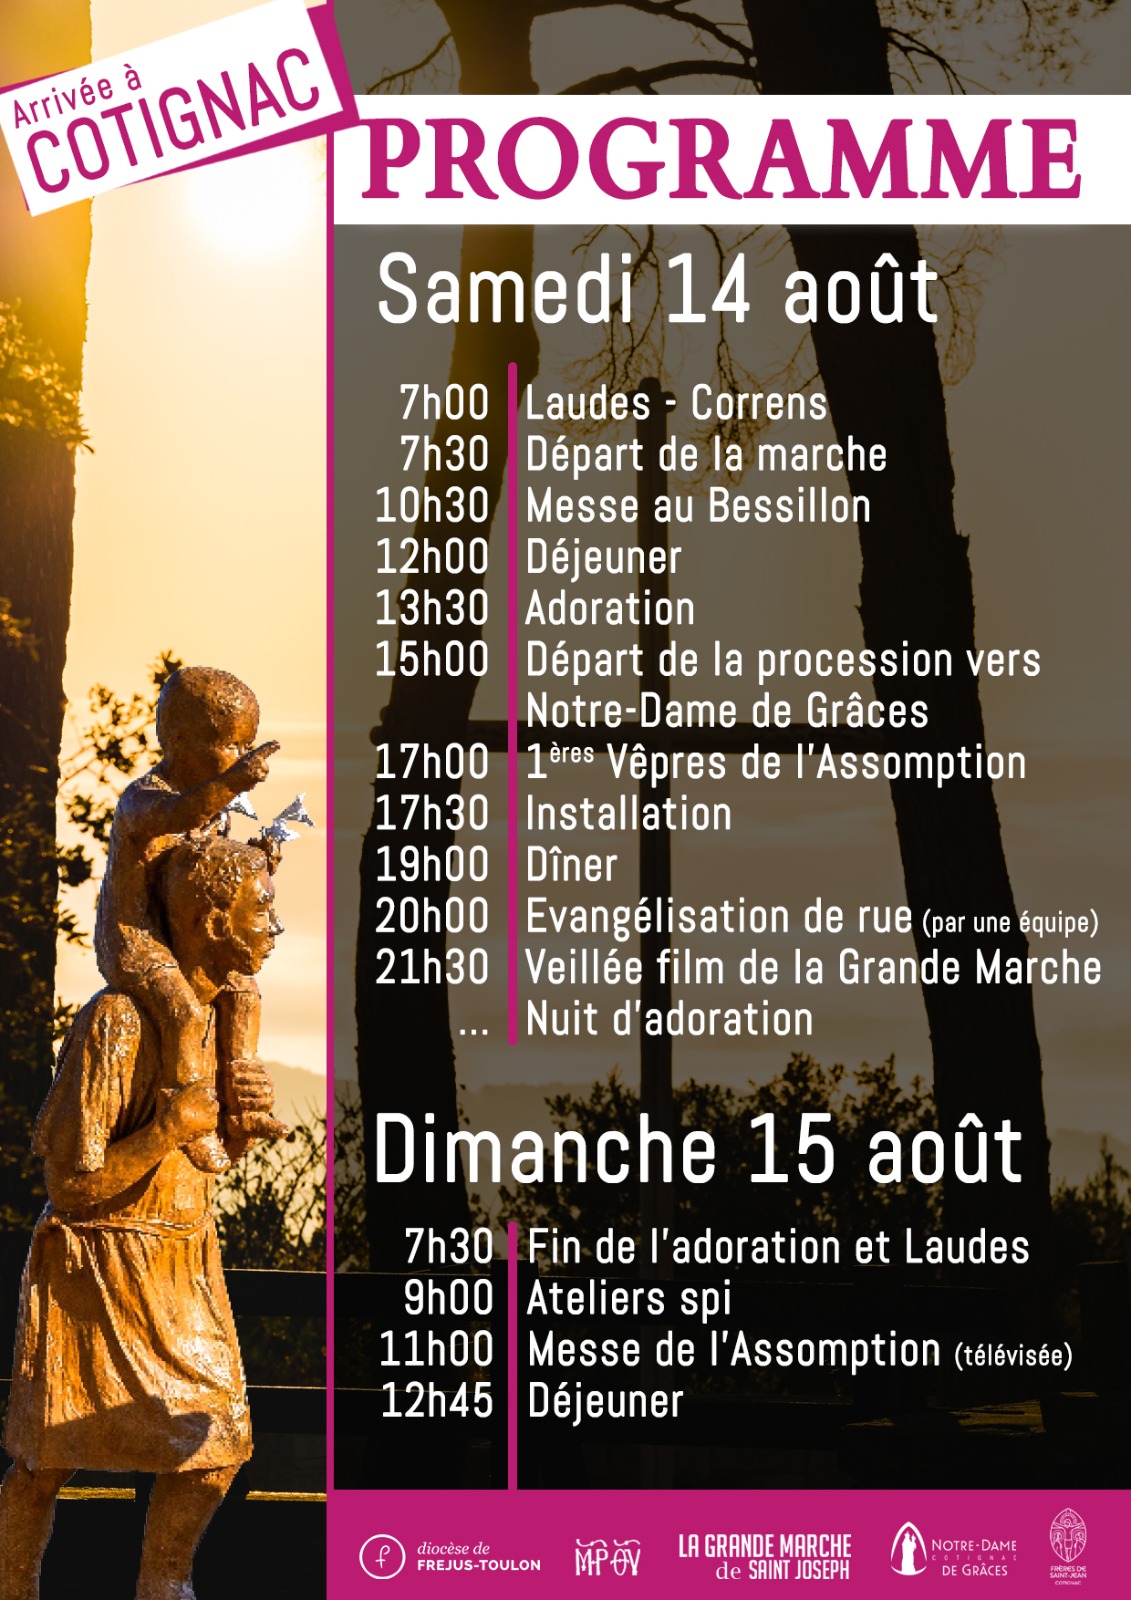 C8 - La « Grande marche de saint Joseph » traversera la France cet été PHOTO-2021-07-25-23-08-33